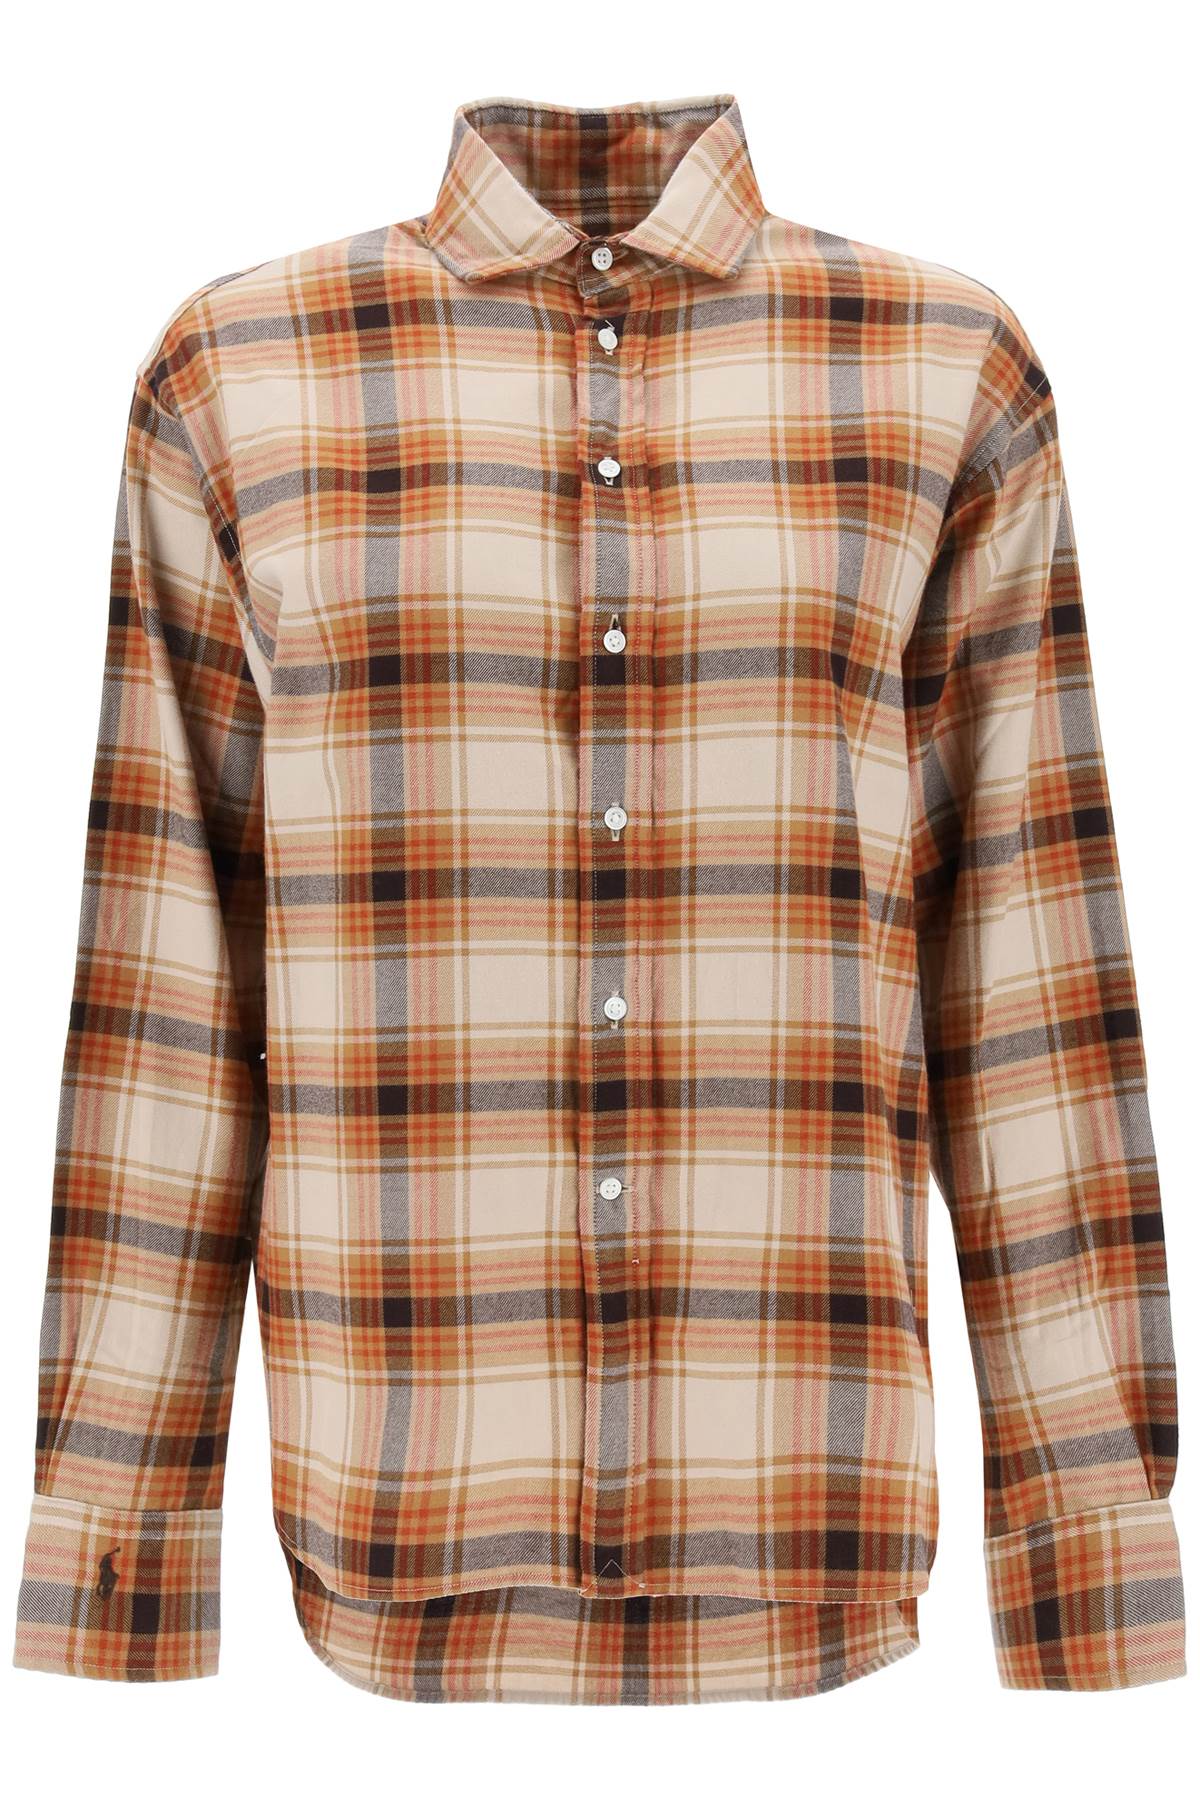 Polo ralph lauren check flannel shirt-0